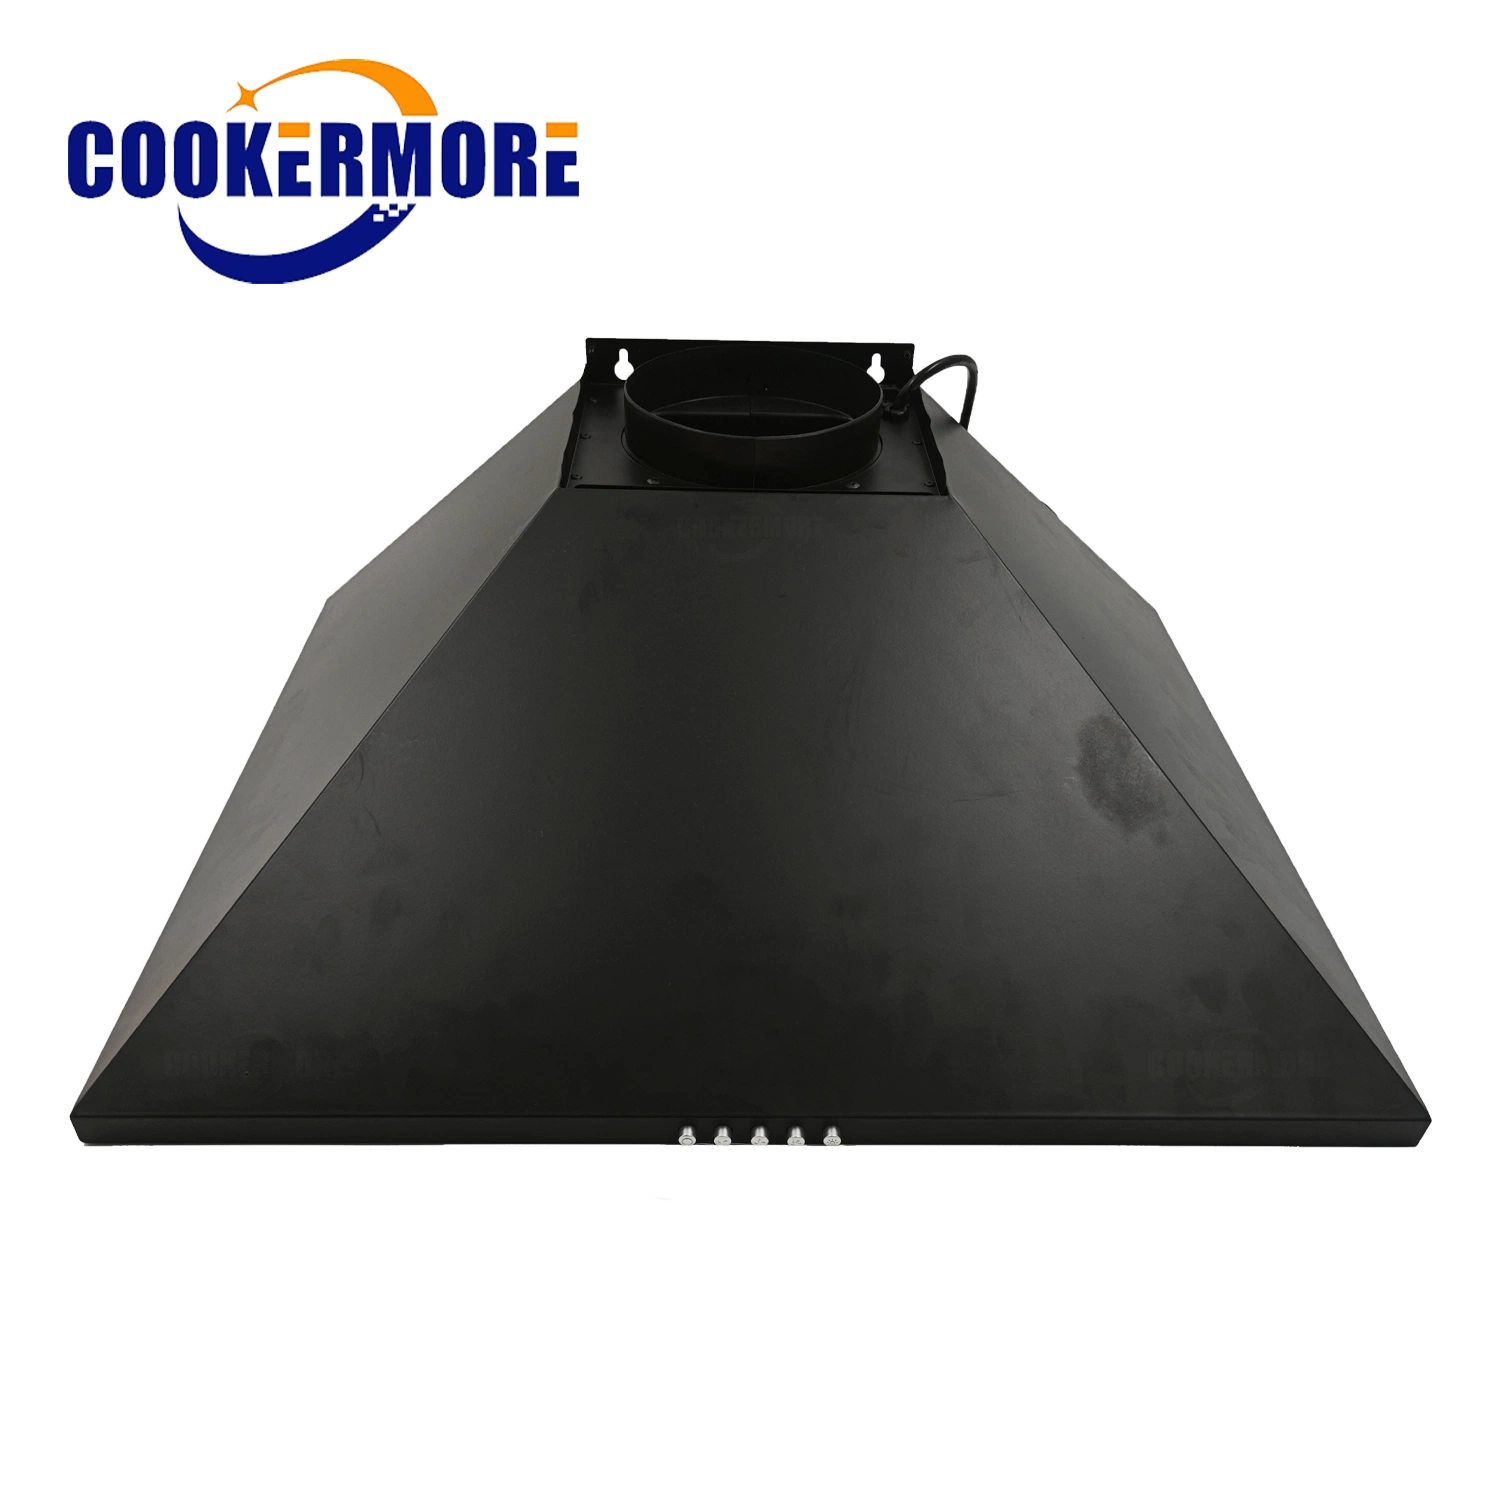 أداة المطبخ من نوع Cookermore أداة سحب الدخان مجموعة أدوات المطبخ